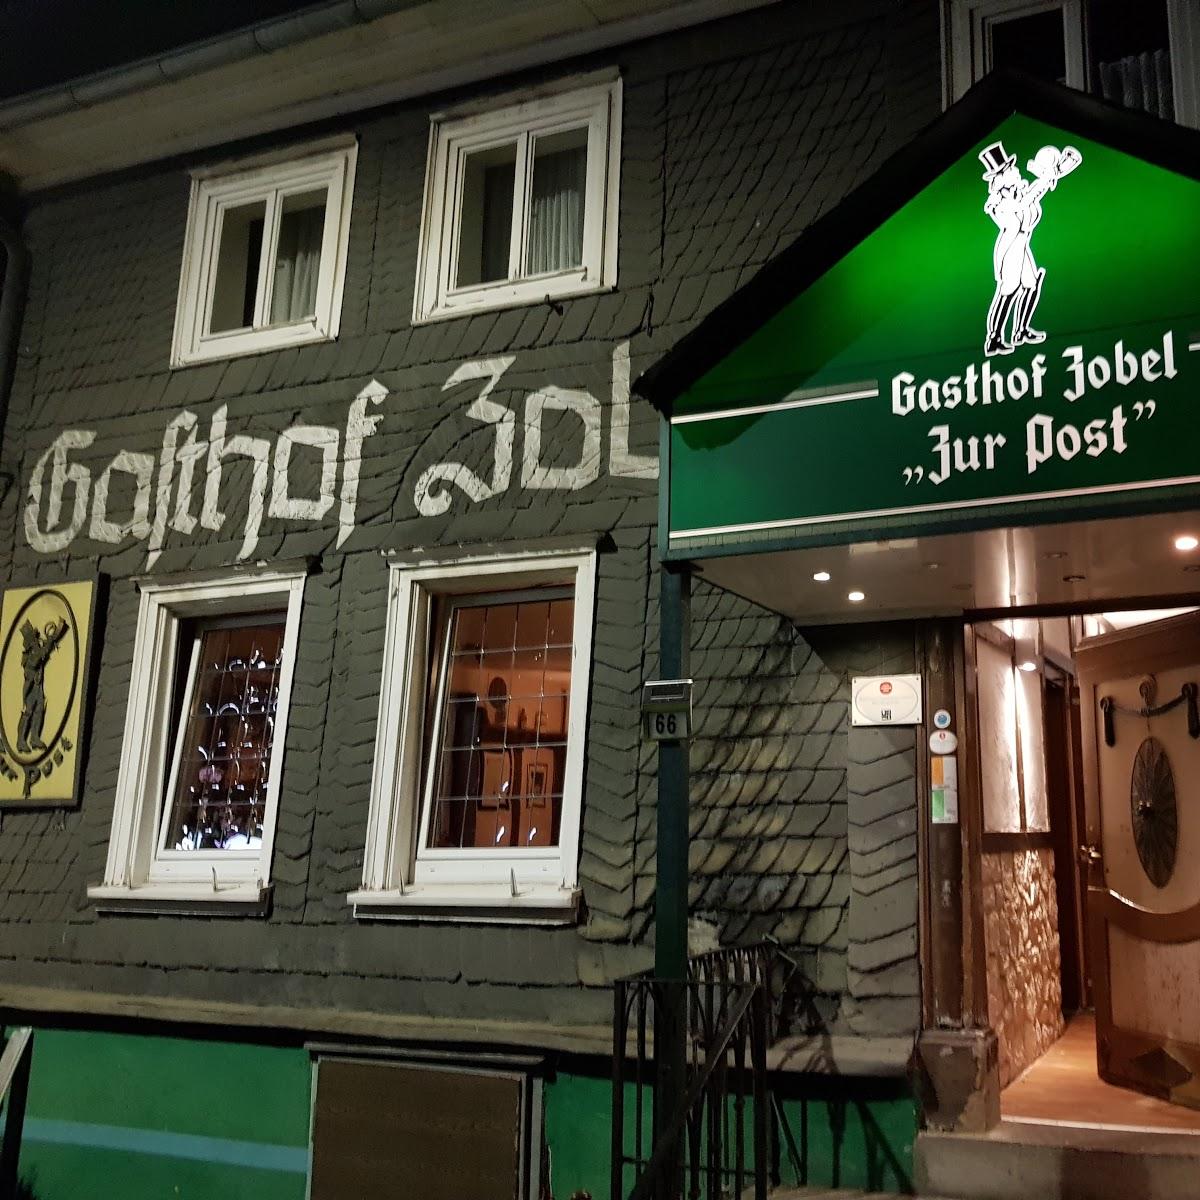 Restaurant "Zur Post Gasthof Zobel Besitzer A. Dörnen" in Iserlohn